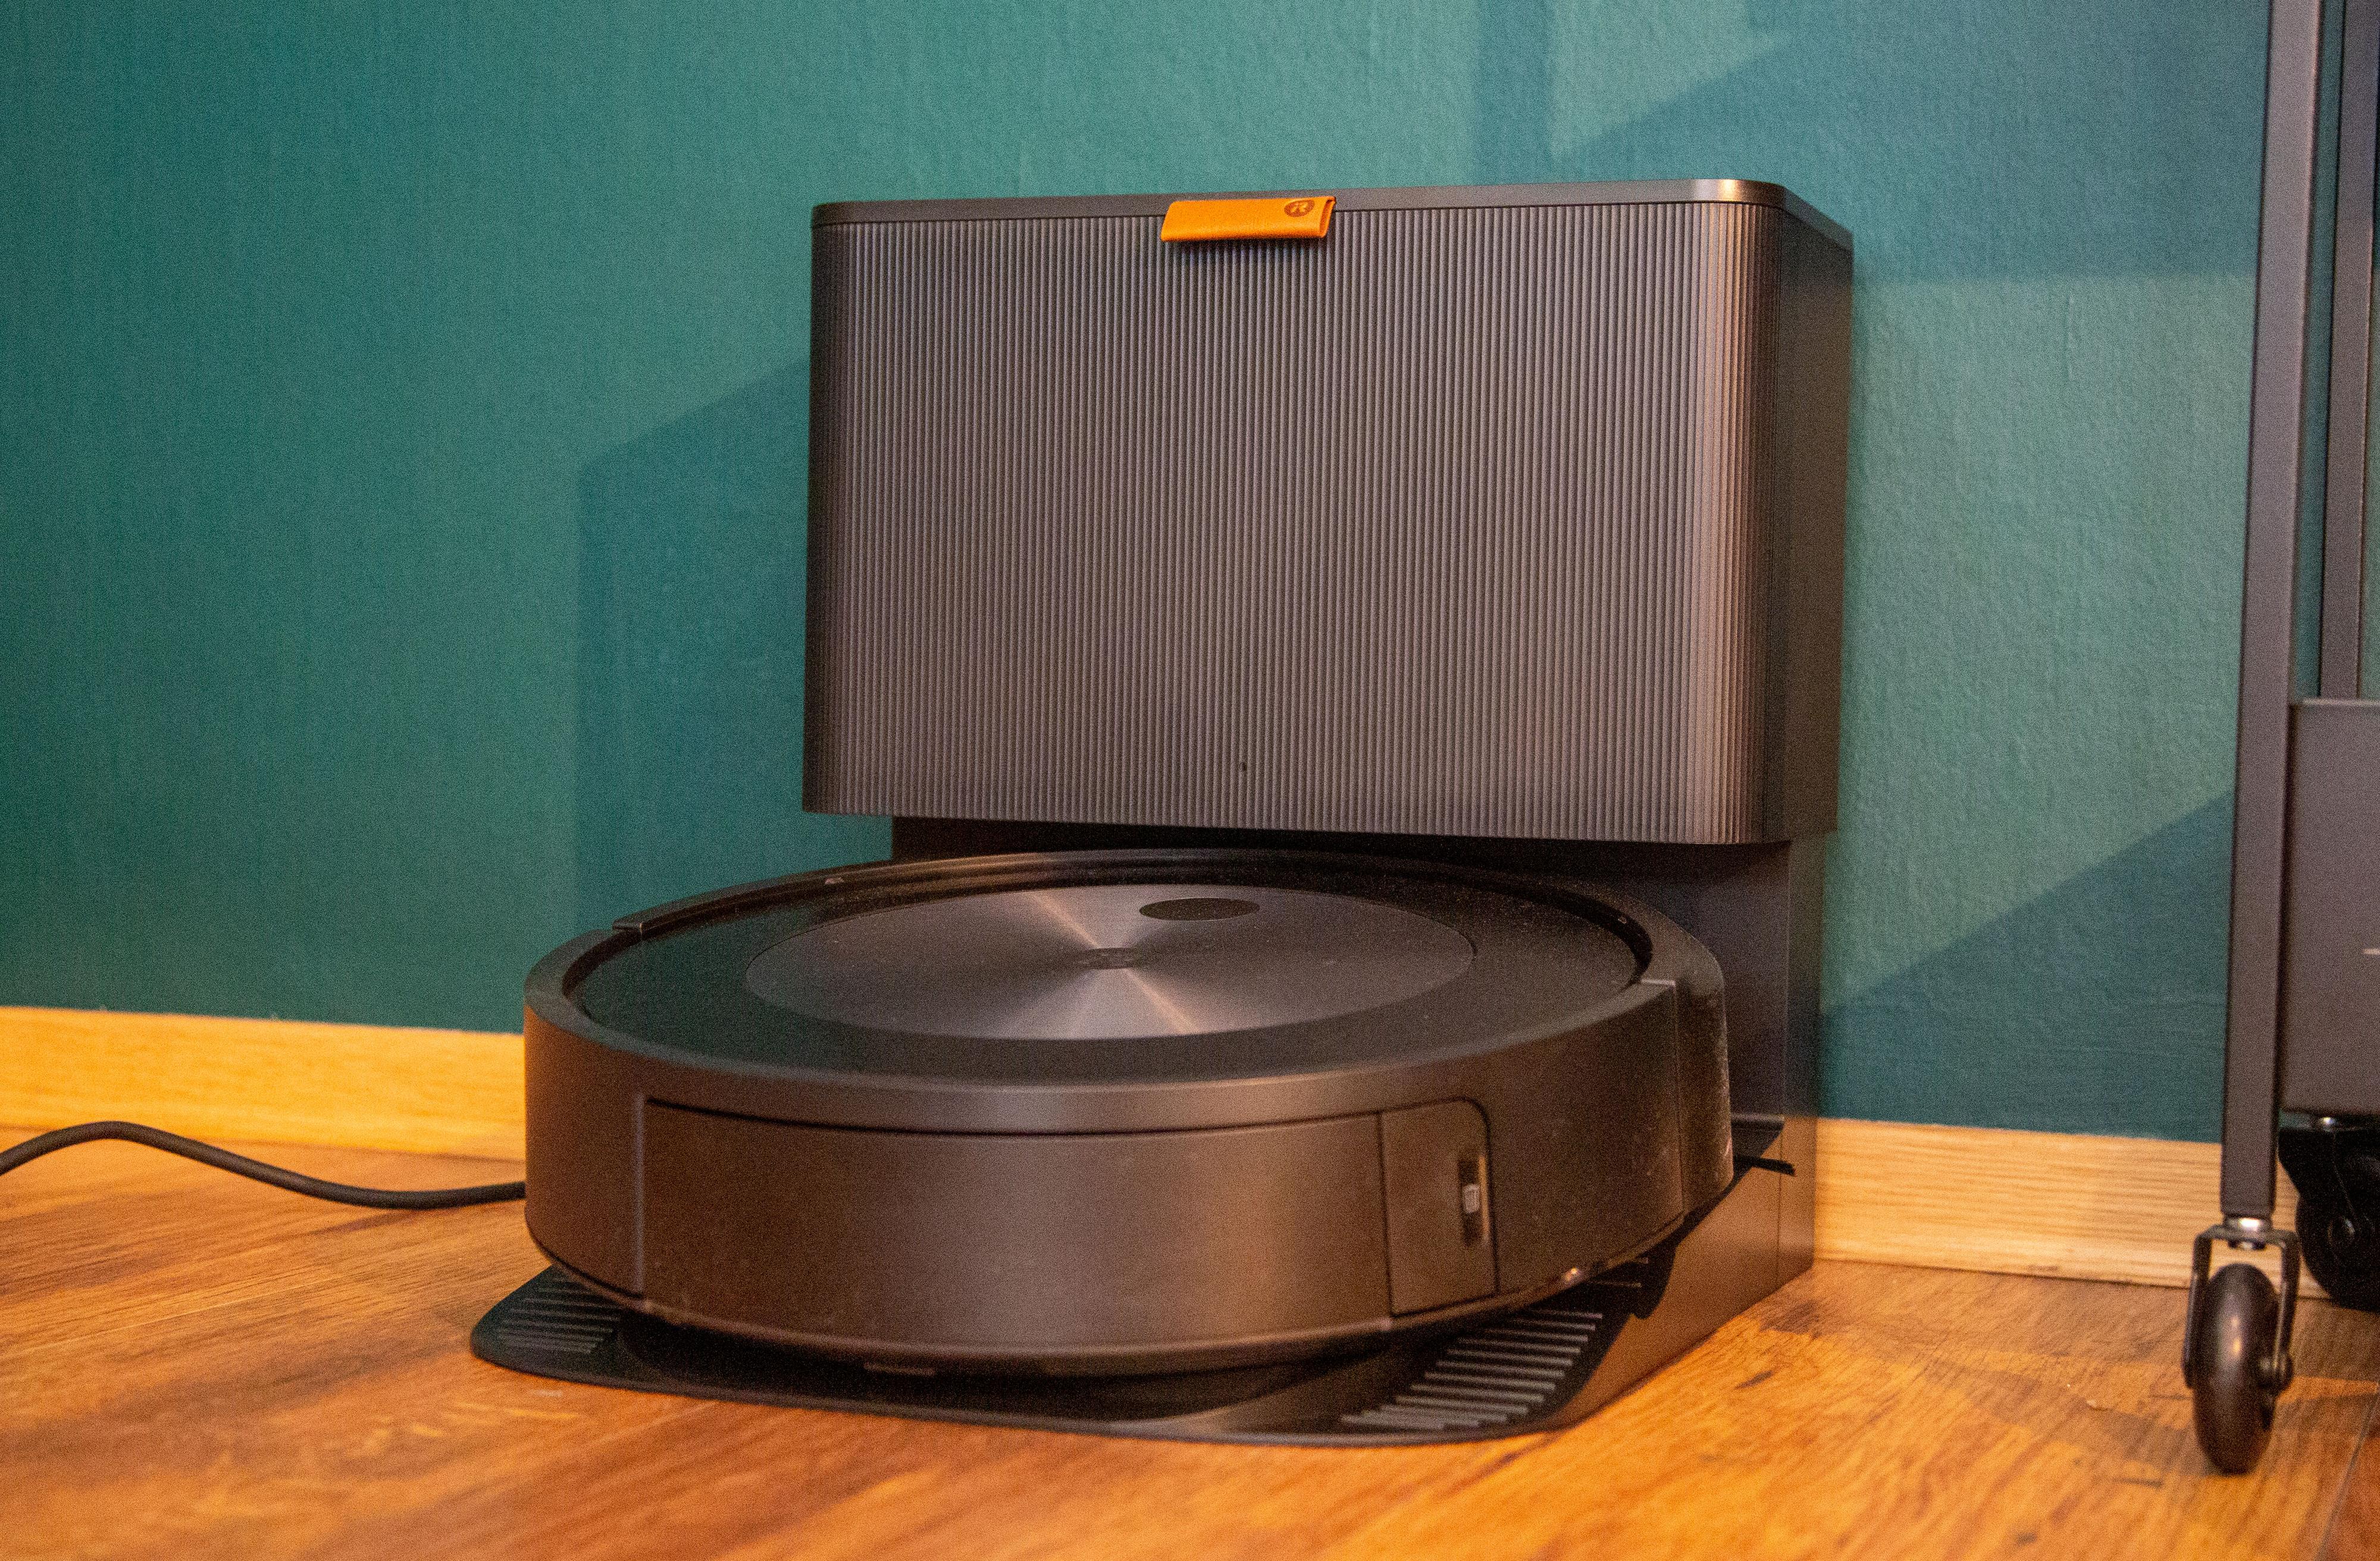 iRobot, hovedsaklig kjent for sine Roomba-støvsugere, blir en del av Amazons portefølje fremover, gitt at oppkjøpsavtalen blir godkjent. Her modellen J7+. 